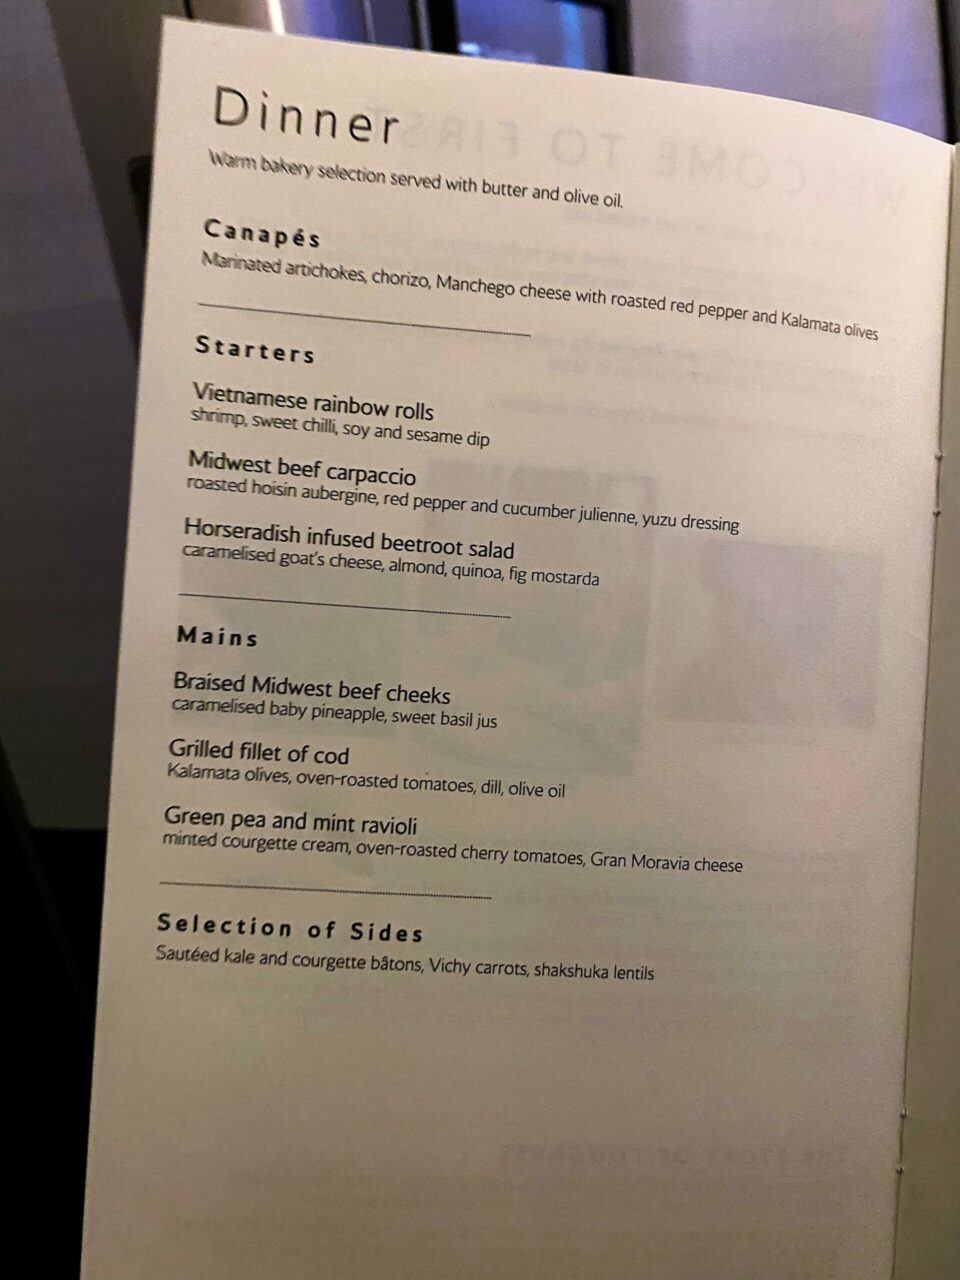 British Airways First B777 dinner menu